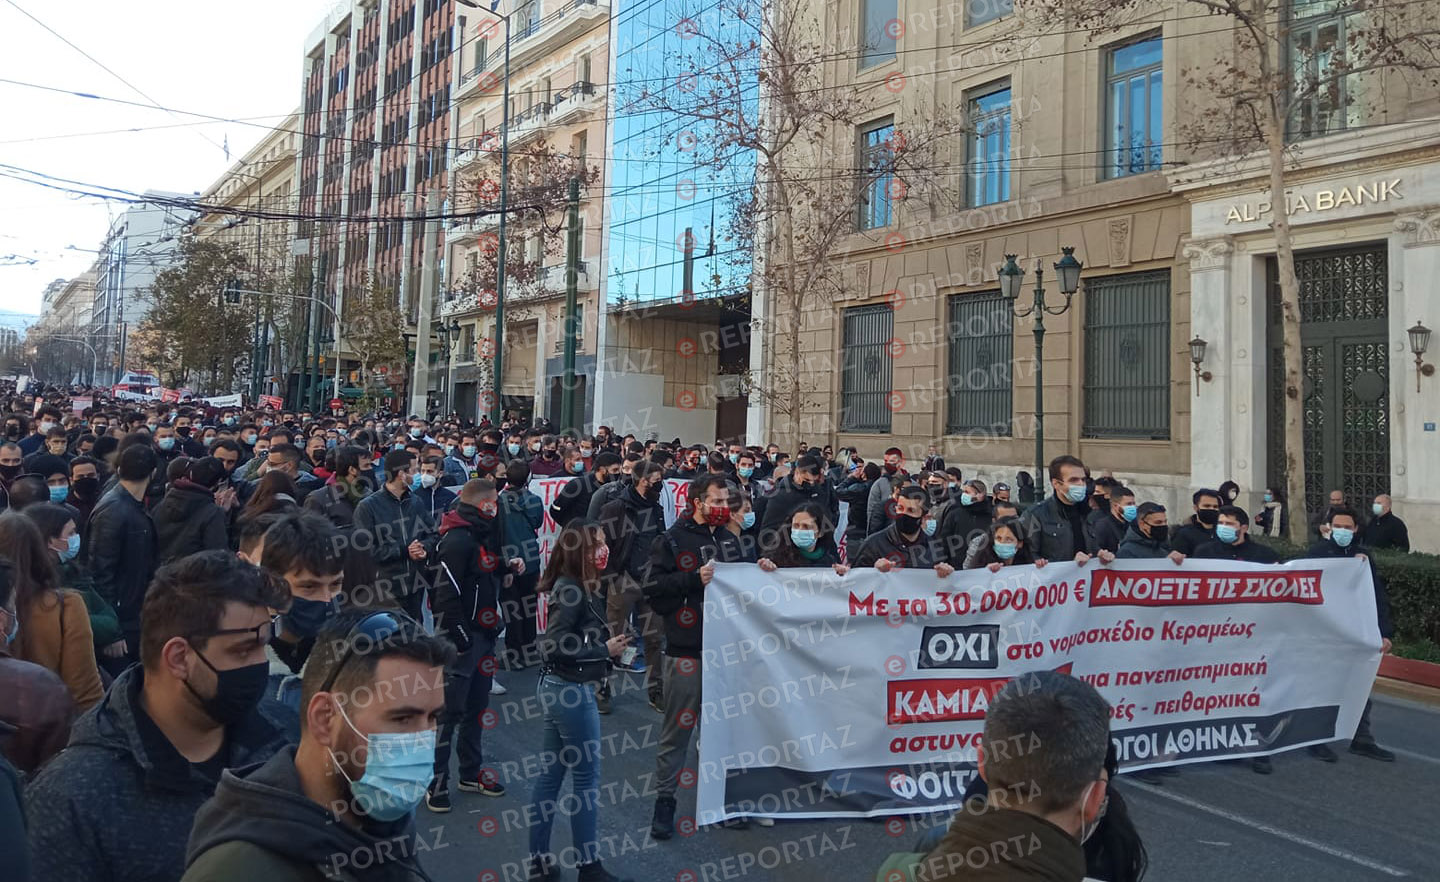 Πανεκπαιδευτικό συλλαλητήριο στα Προπύλαια παρά την απαγόρευση - Εικόνες απίστευτου συνωστισμού